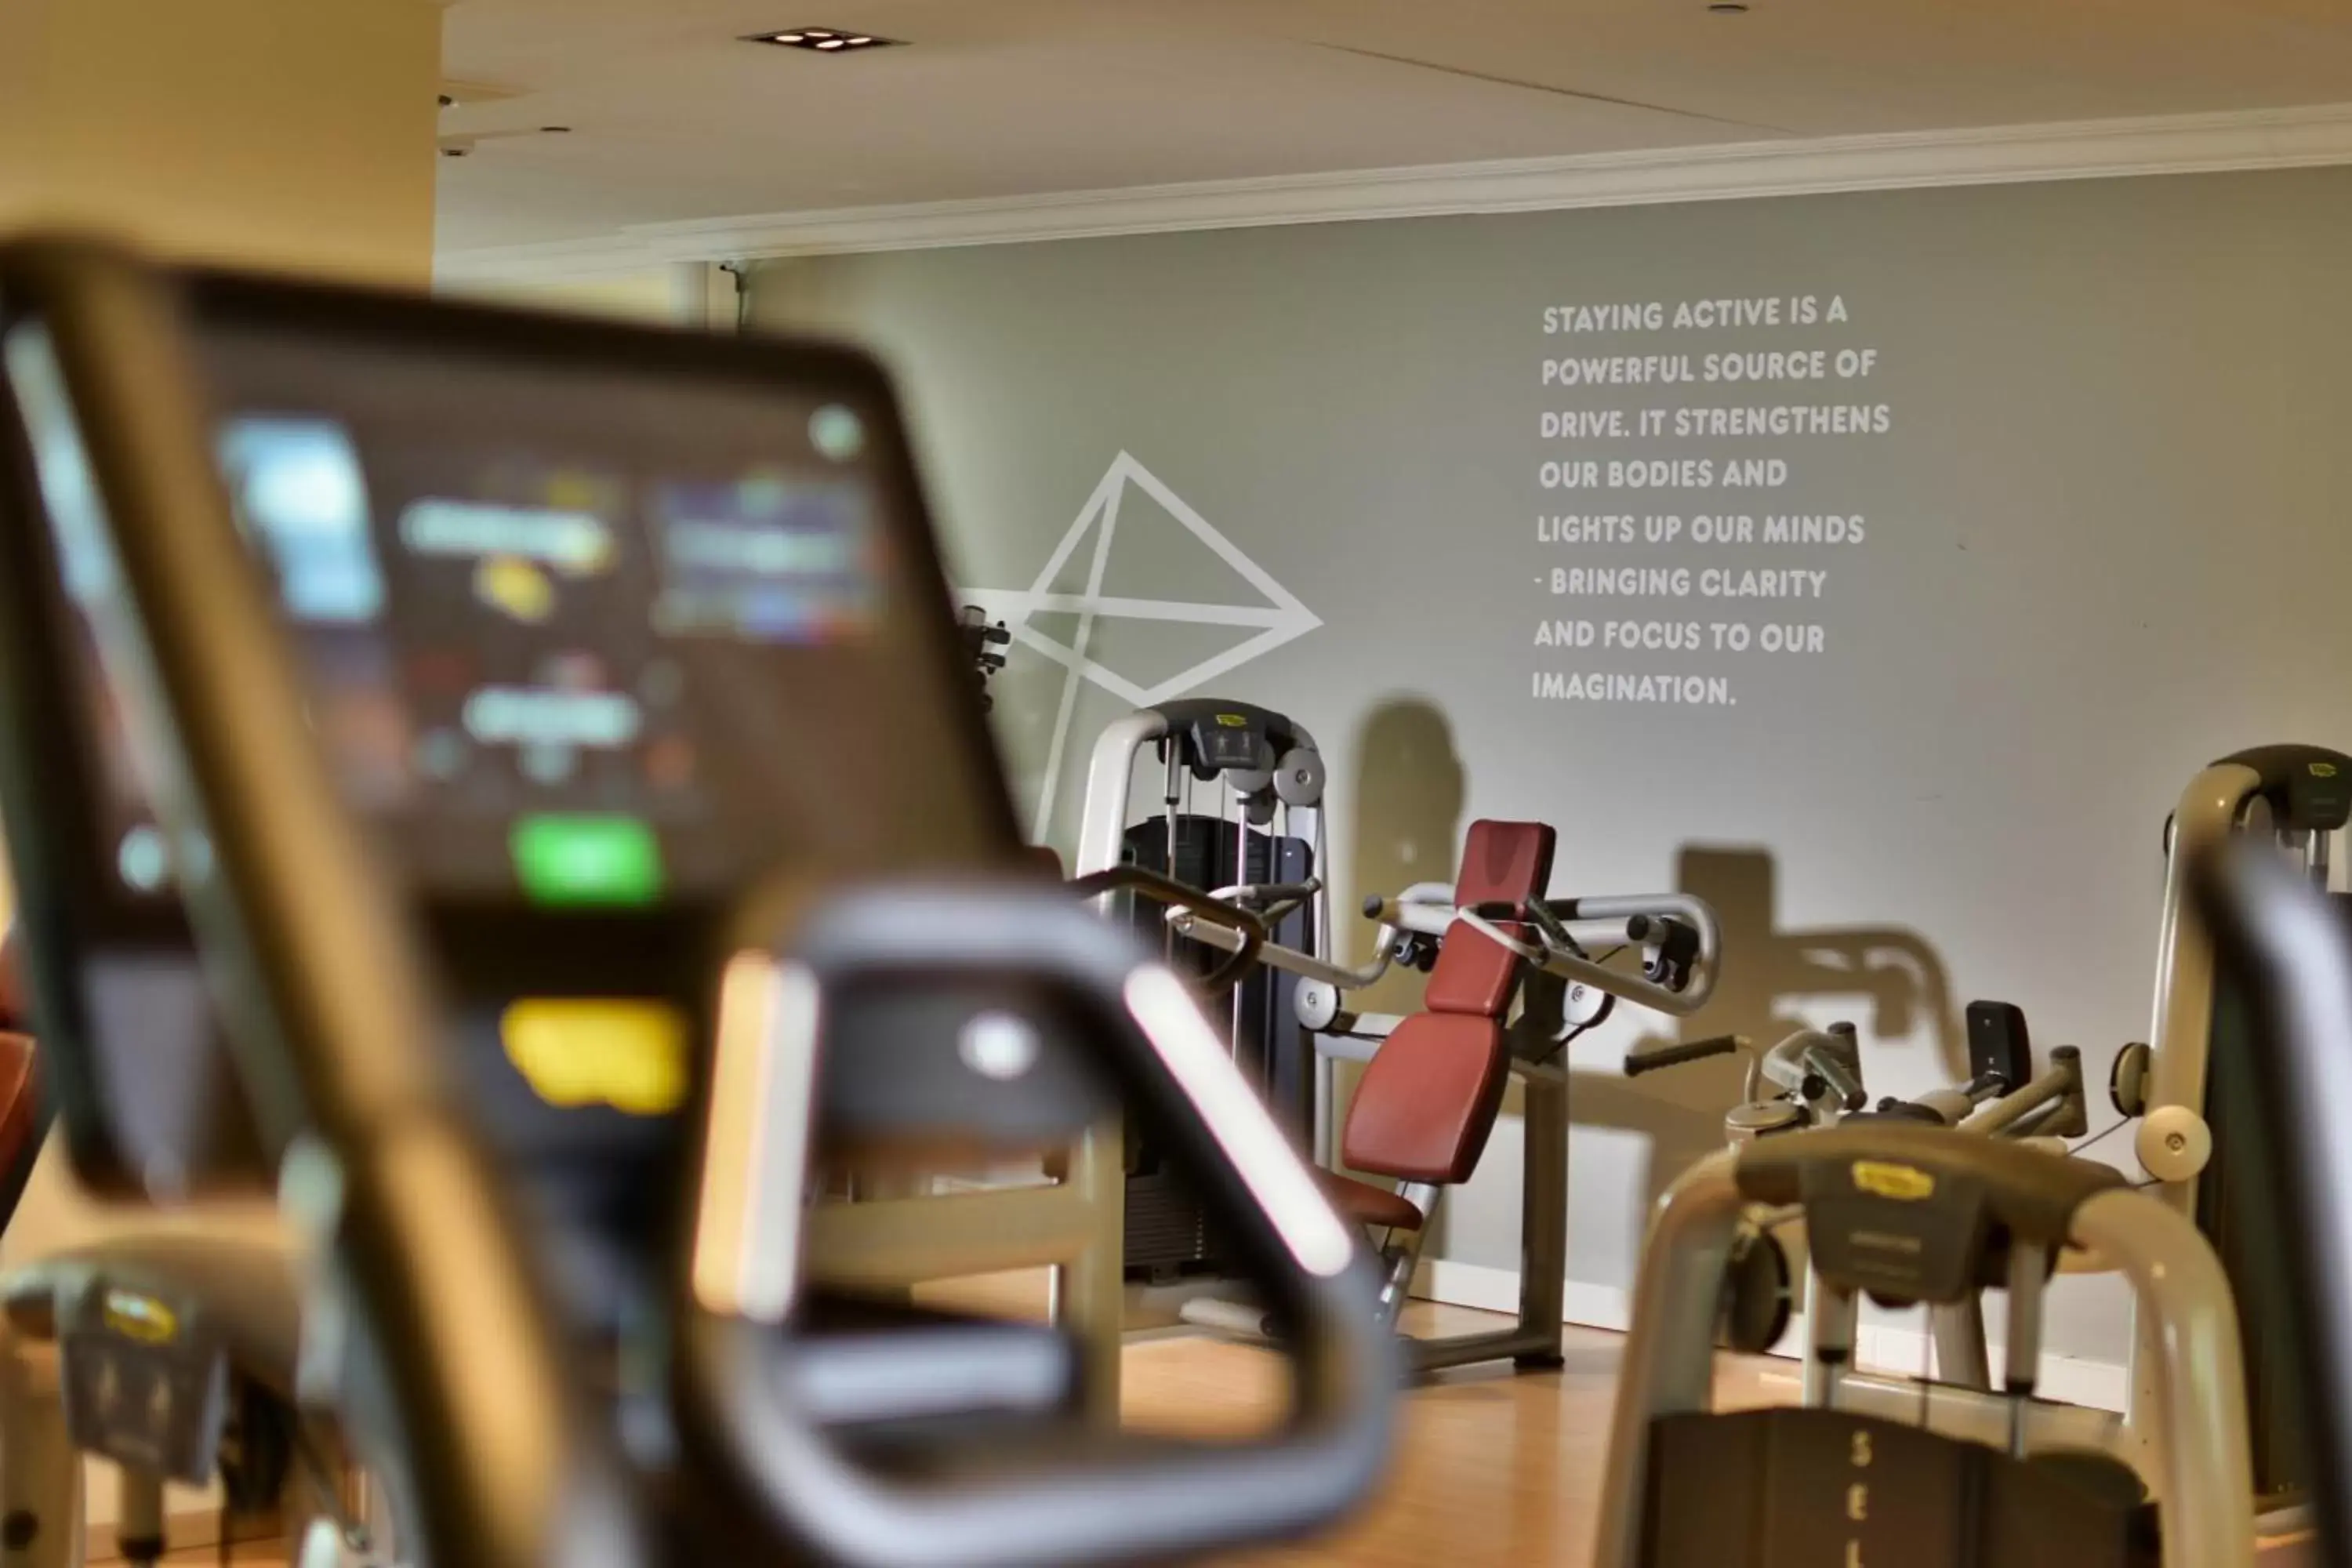 Fitness centre/facilities, Fitness Center/Facilities in Denia Marriott La Sella Golf Resort & Spa